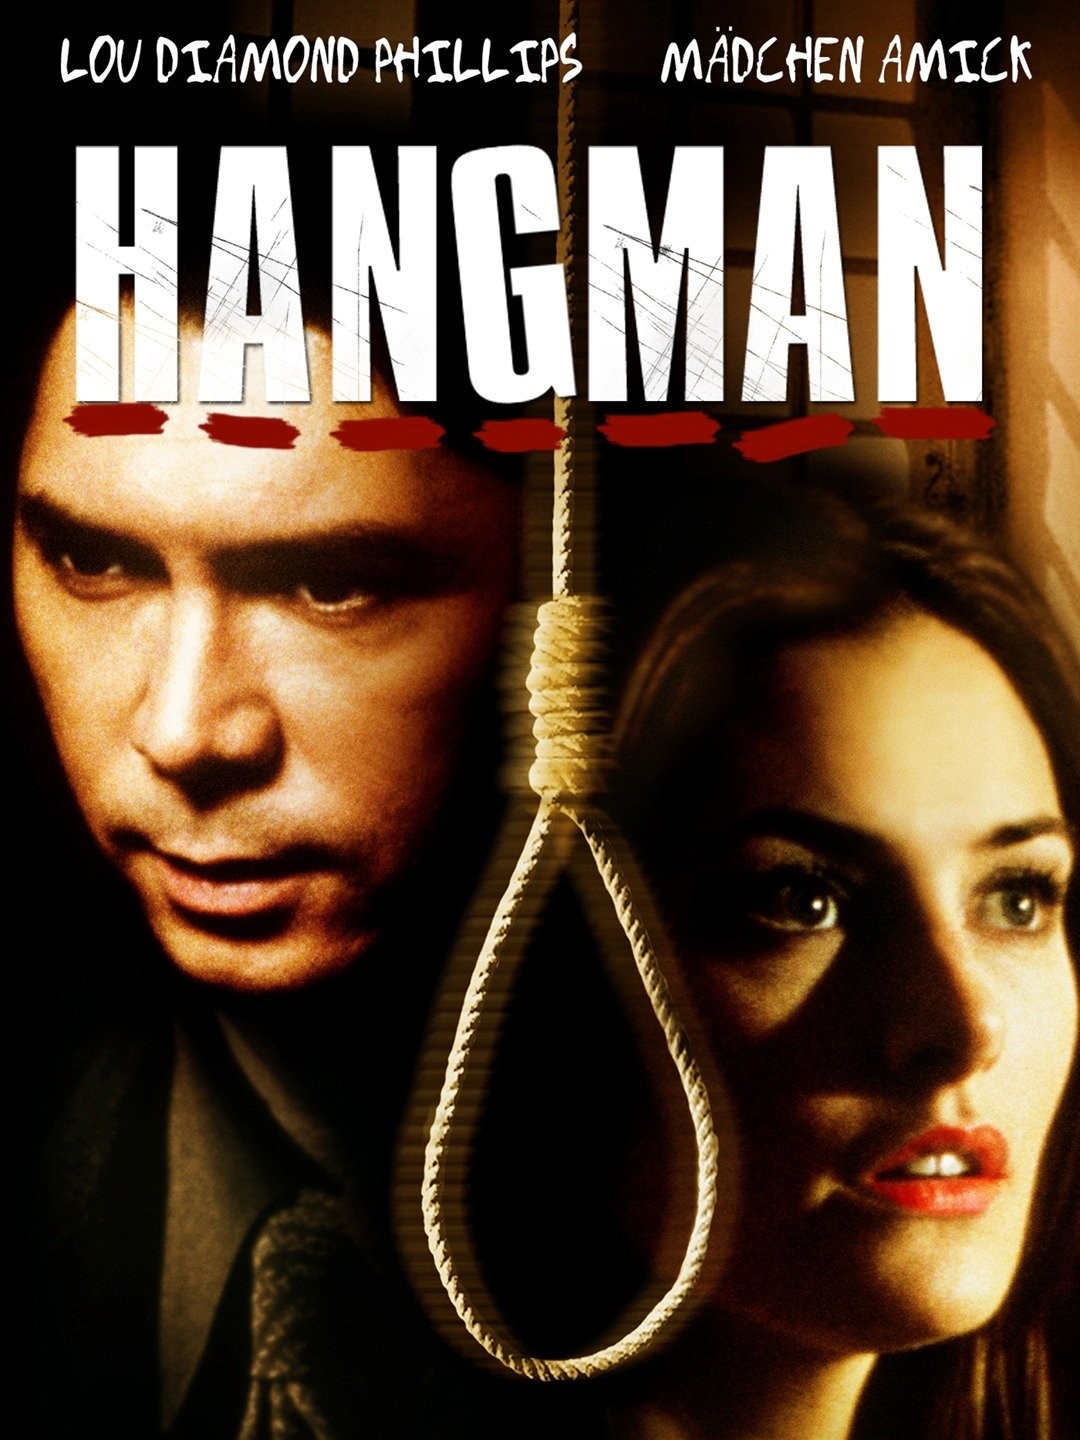 The Hangman (2005 film) - Wikipedia